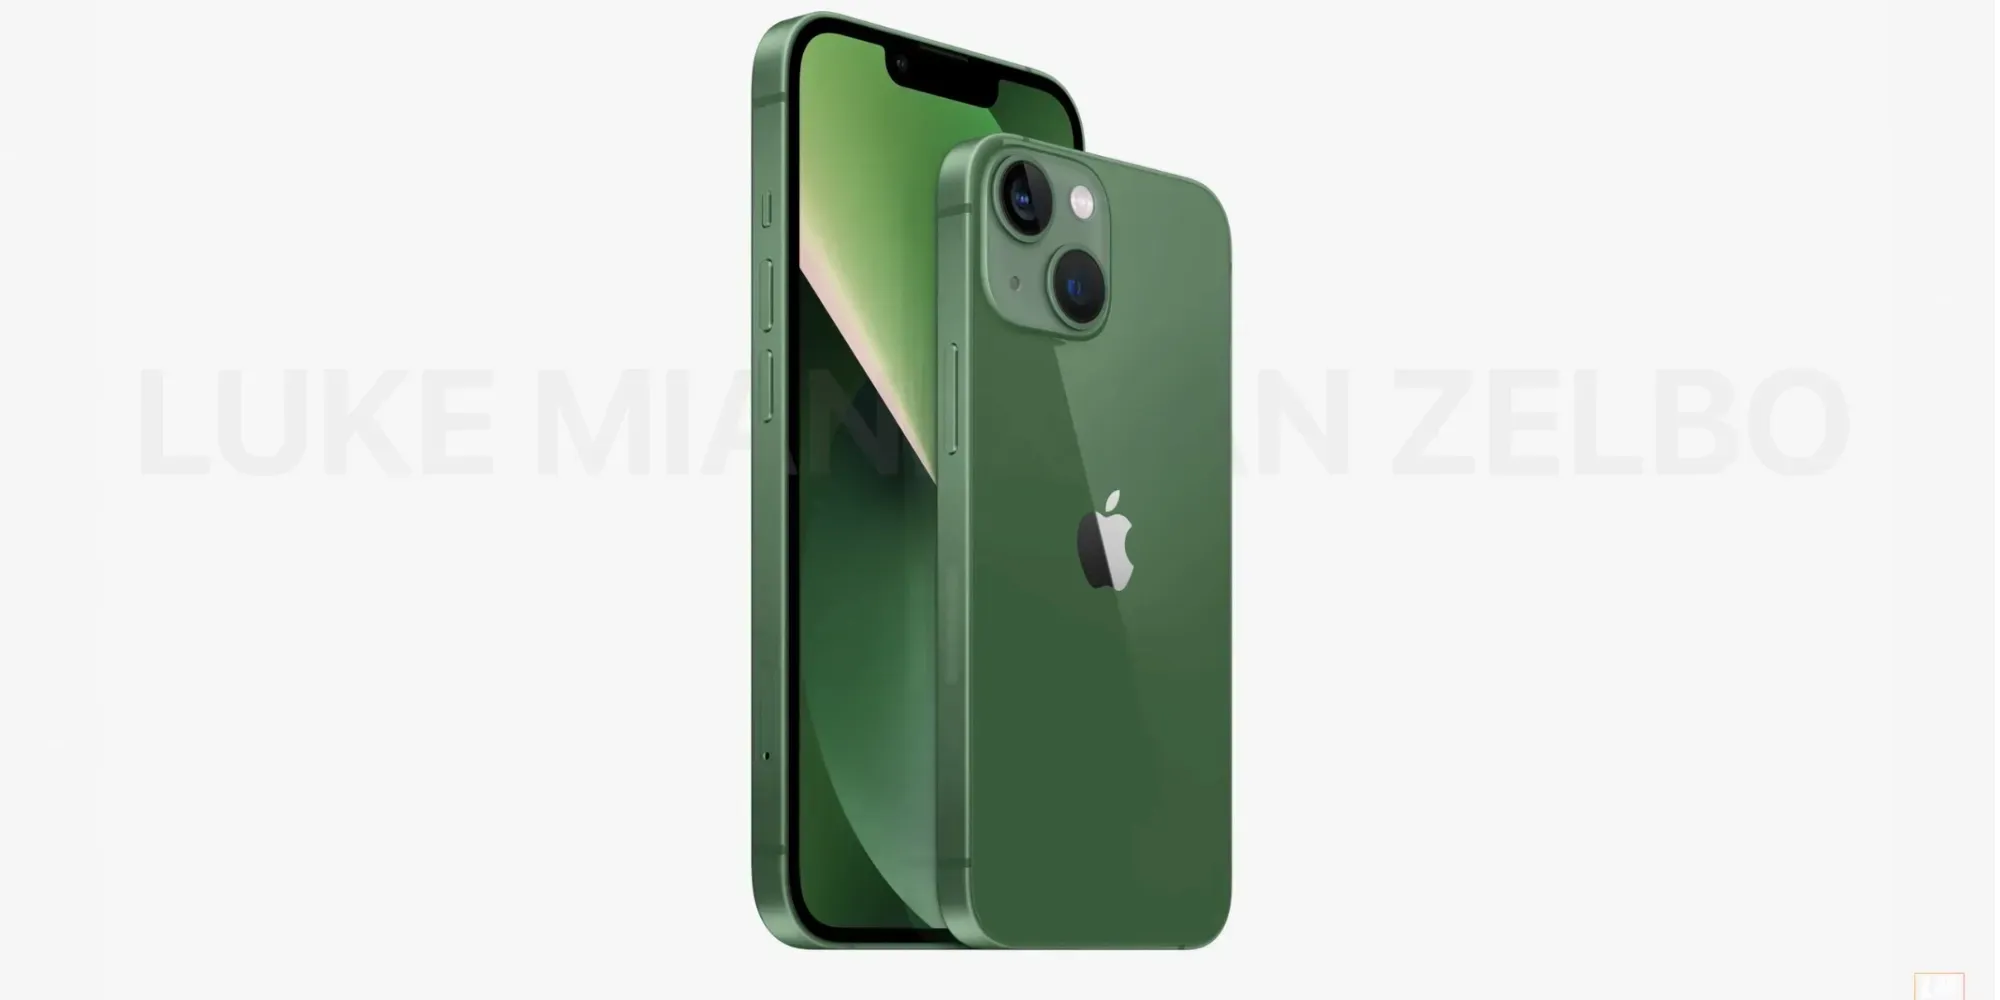 Слух: Apple выпустит новую модель iPhone 13 в зелёном цвете